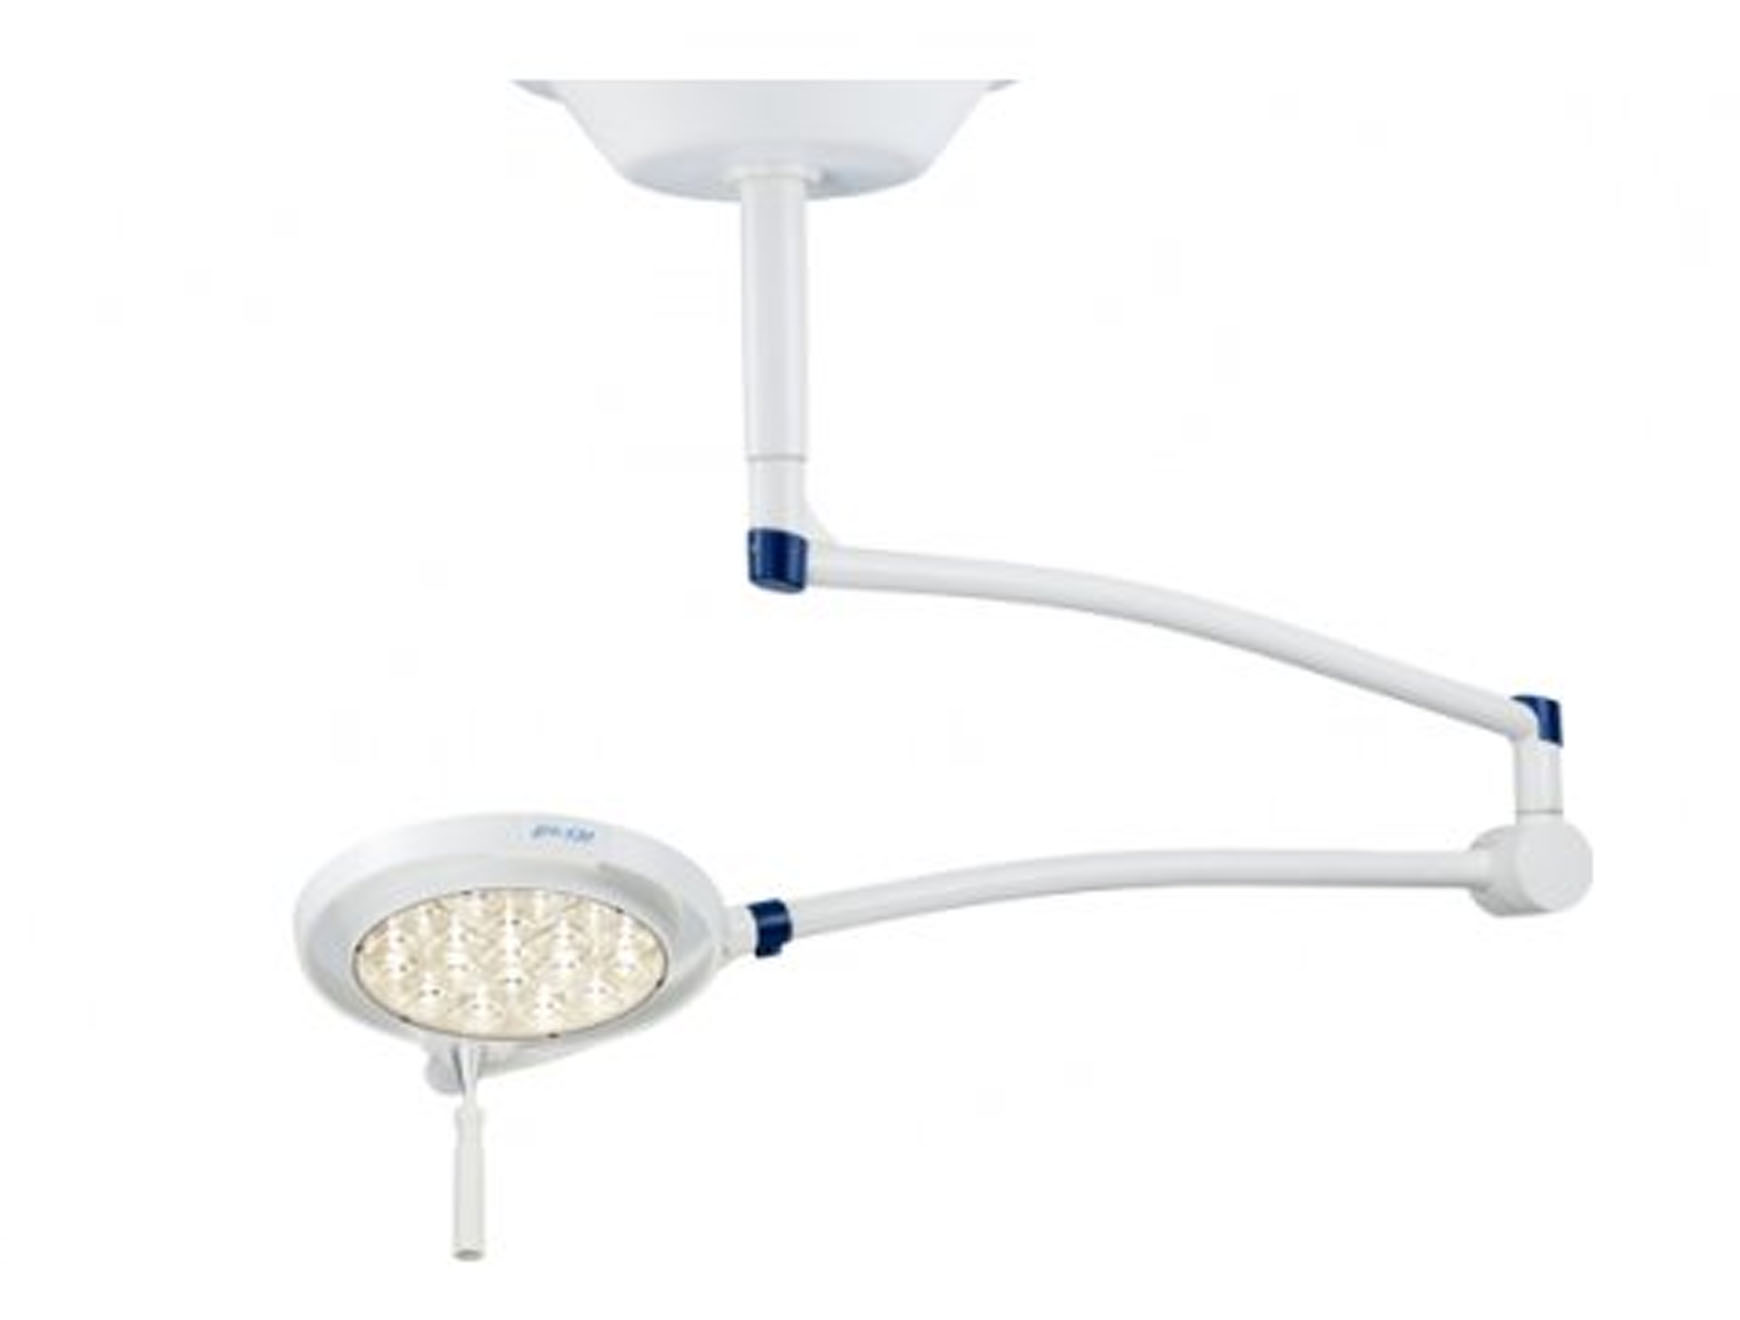 Onderzoekslamp LED 130 - plafondbevestiging - veer arm - exclusief verankeringsring - 1 st